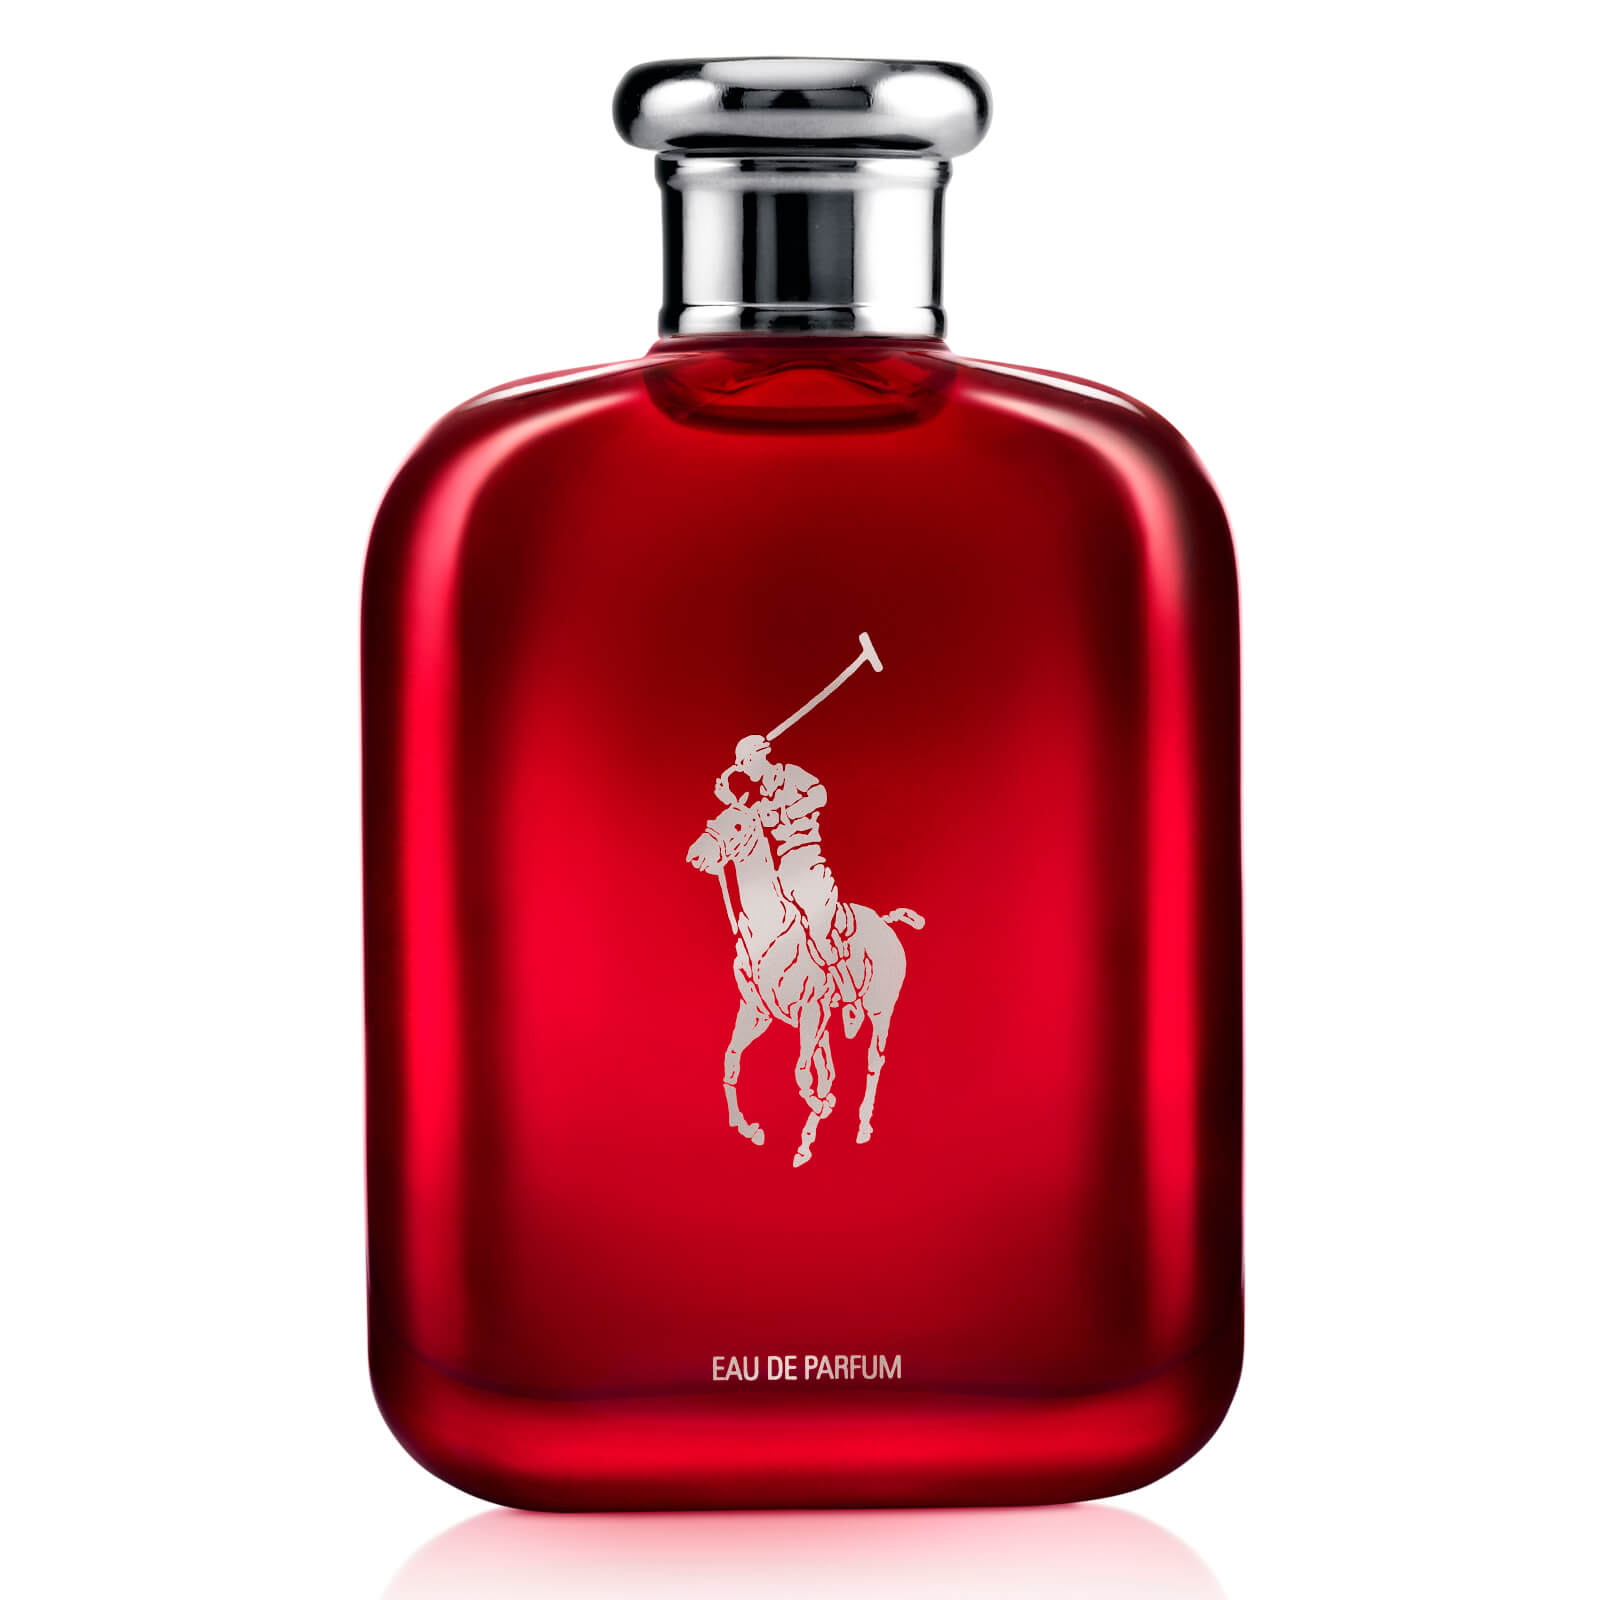 Ralph Lauren Polo Red Eau de Parfum -tuoksu - 125ml